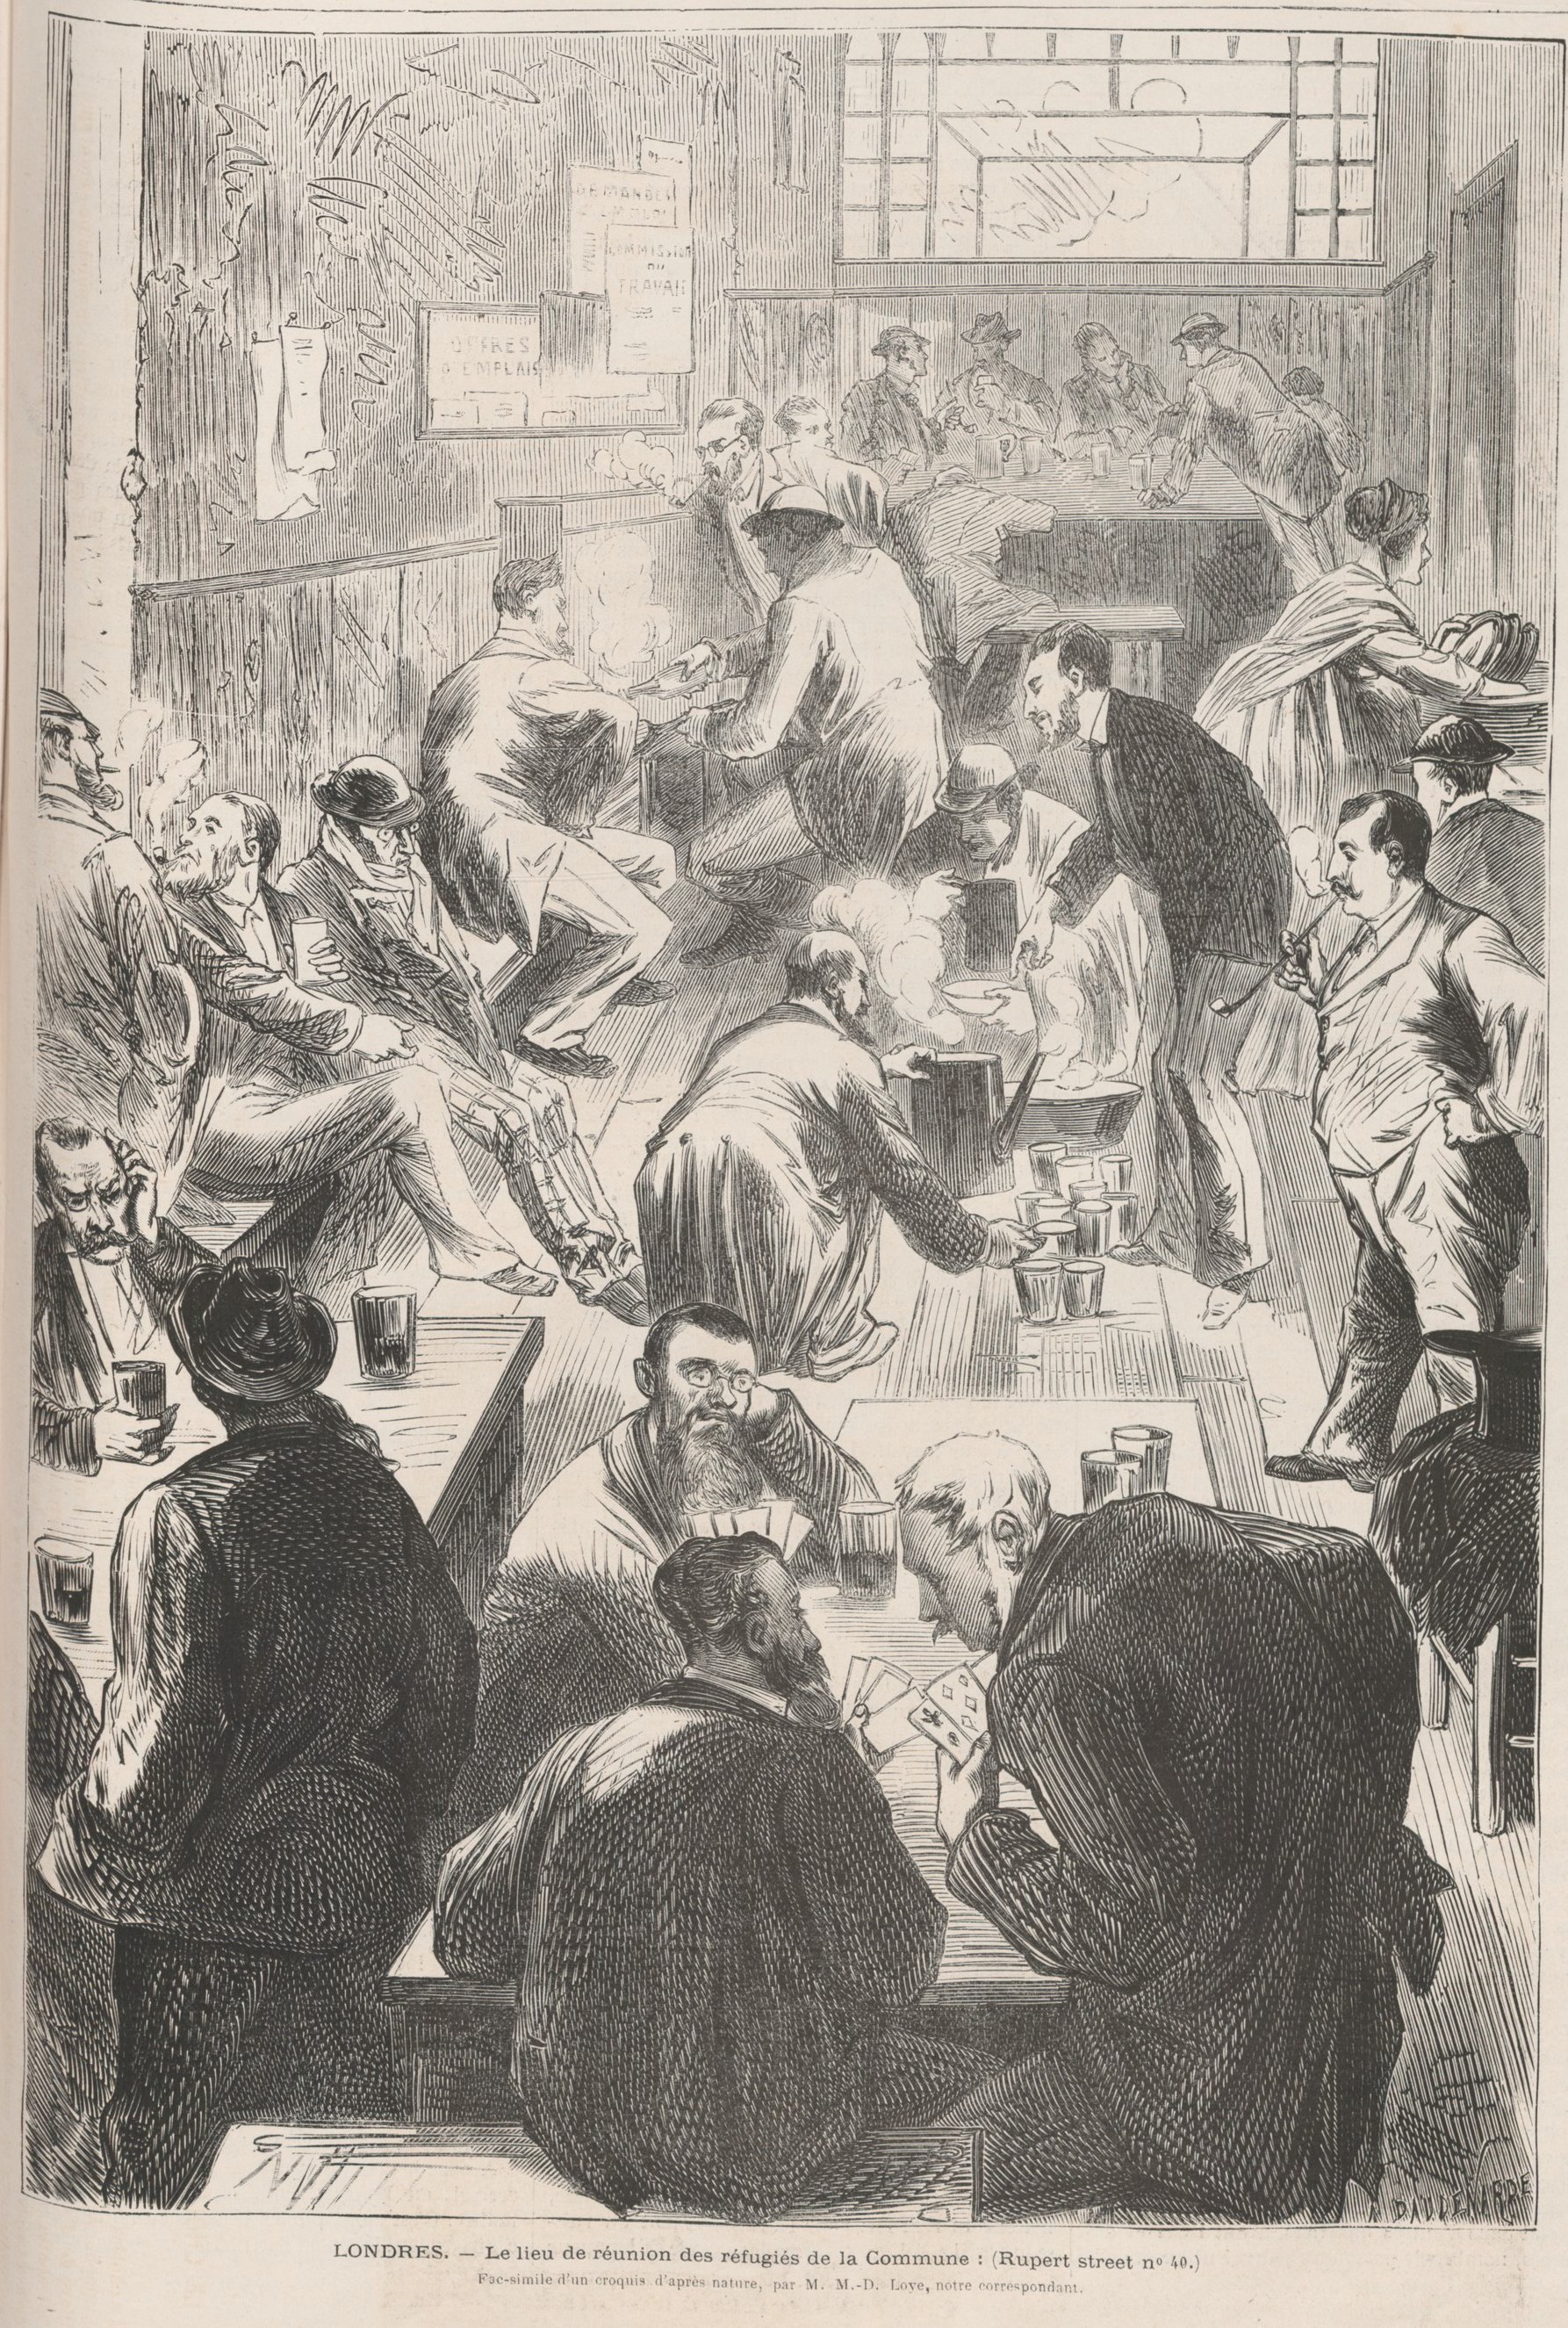 Communards réfugiés à Londres  à Rupert street, 40 (source : Le Monde Illustré du 4 novembre 1871)